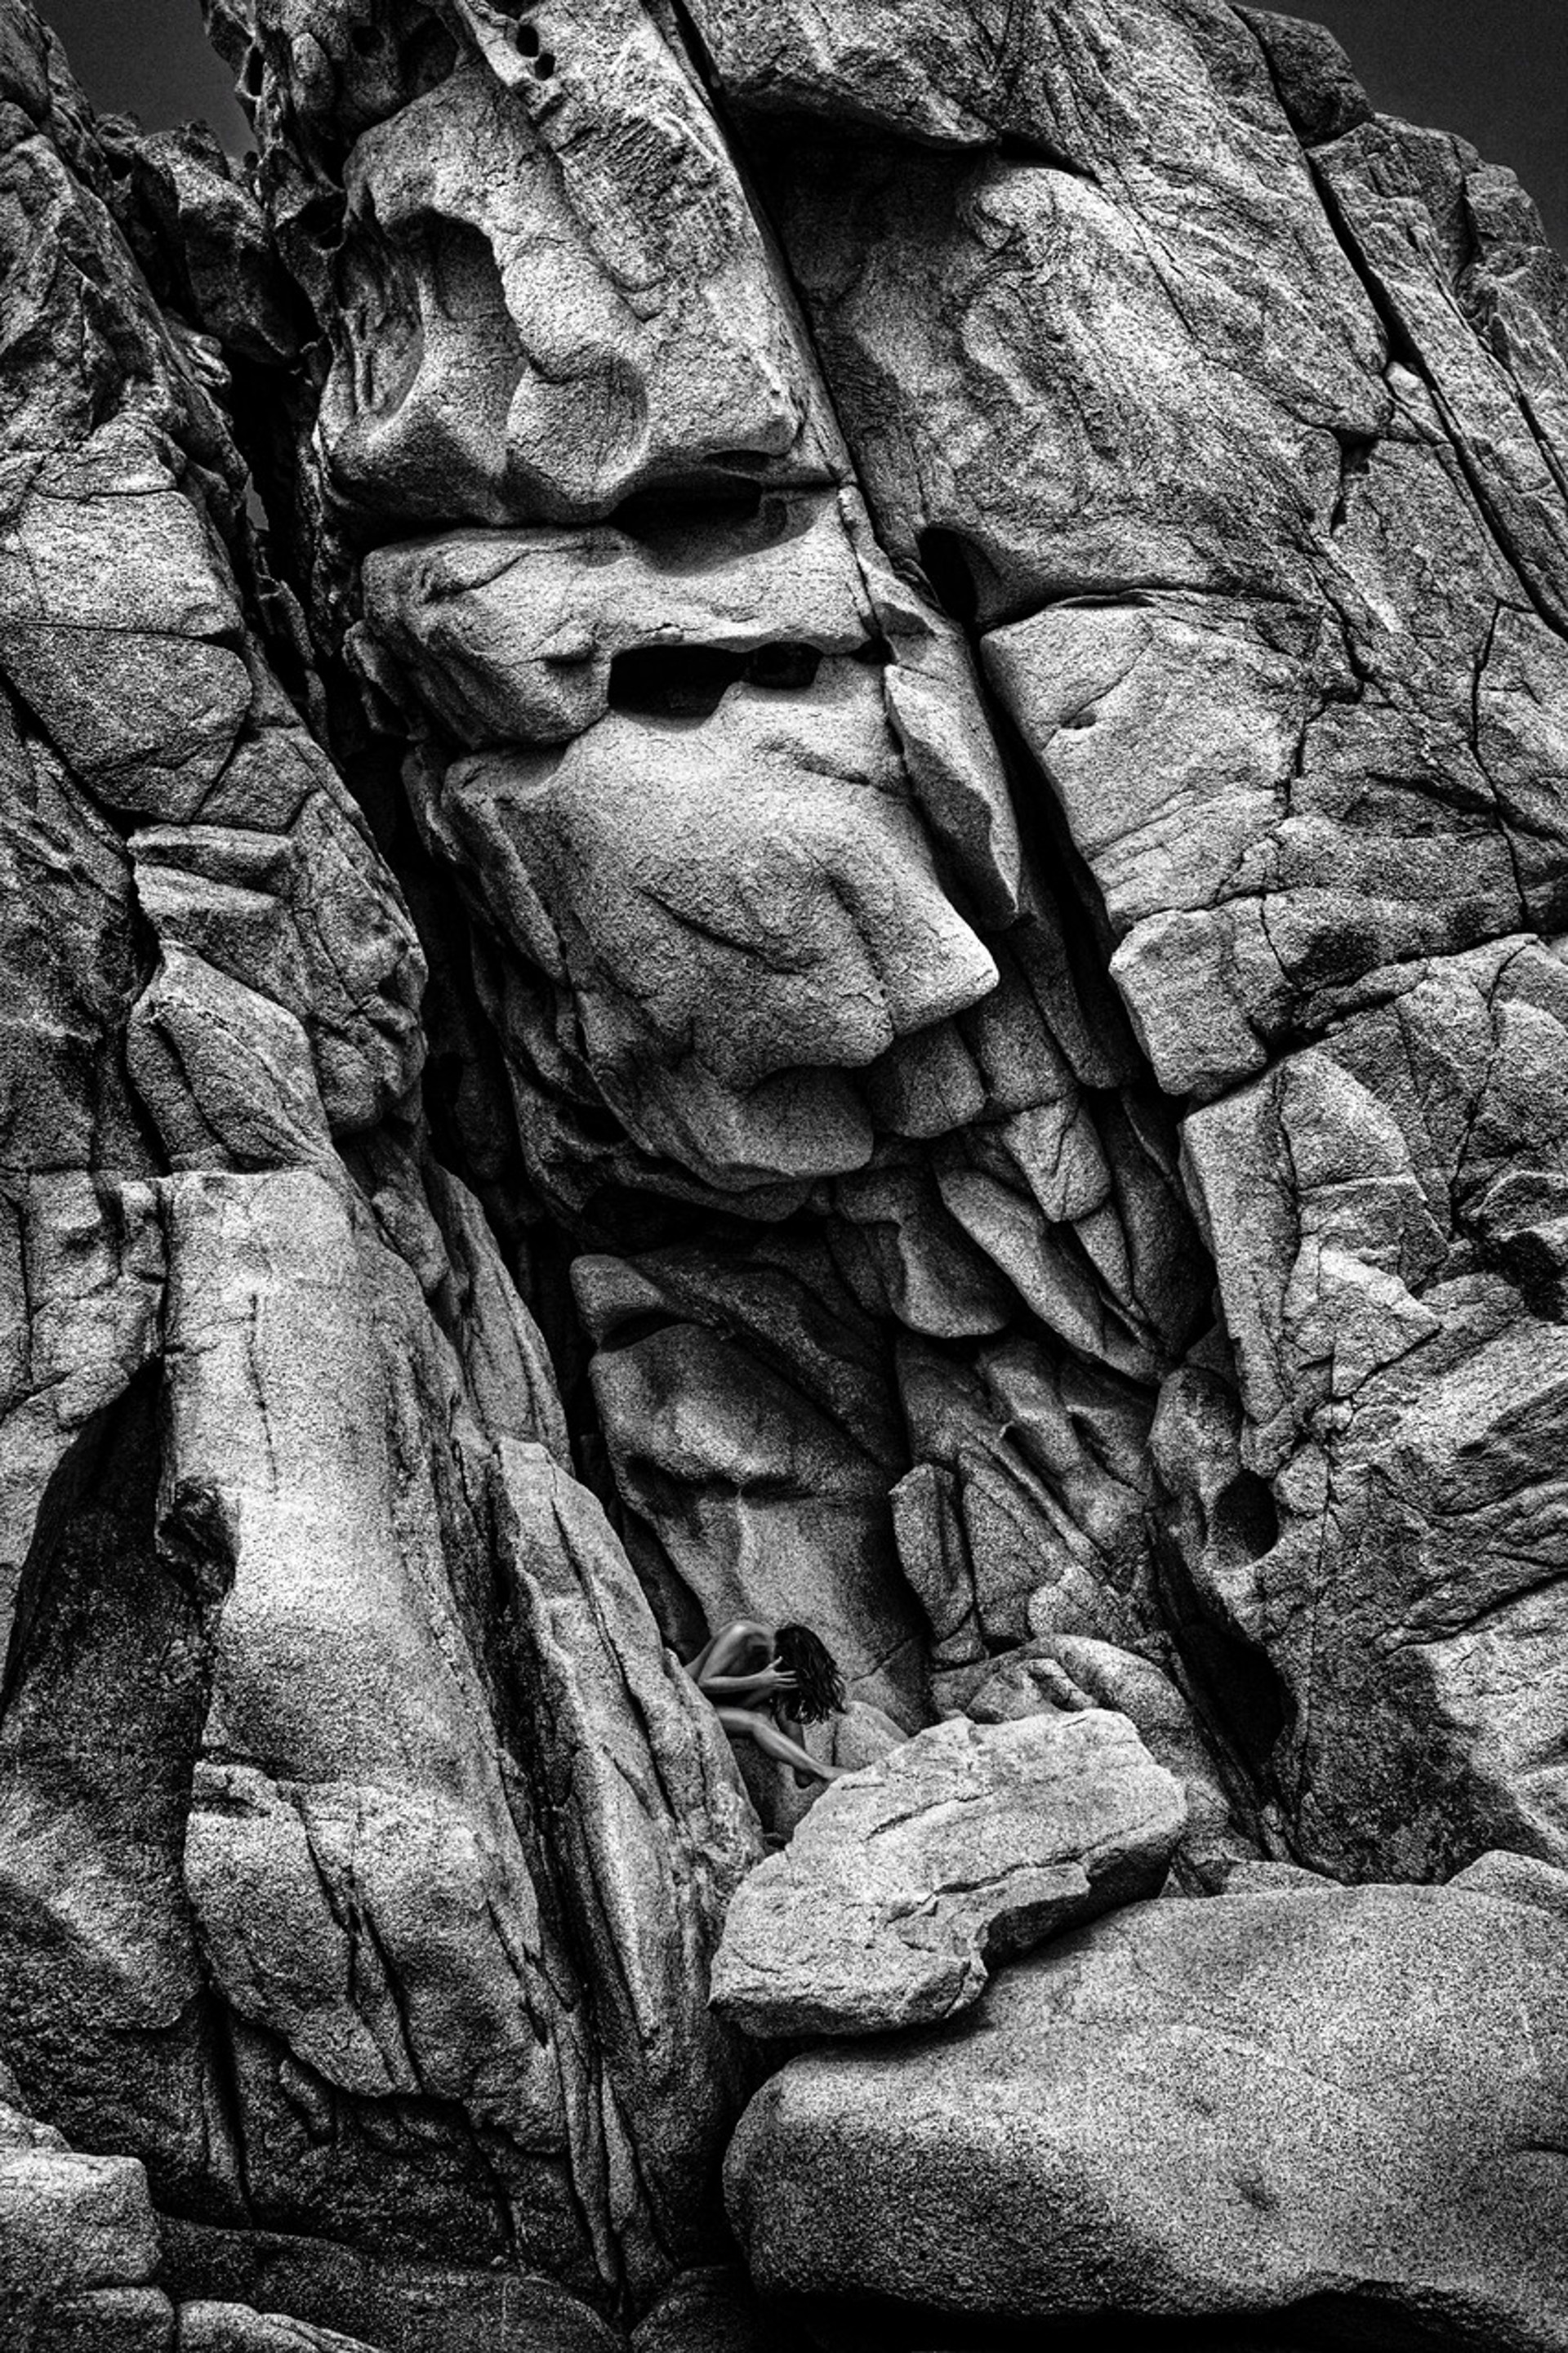 On The Rocks by Rob Brinson